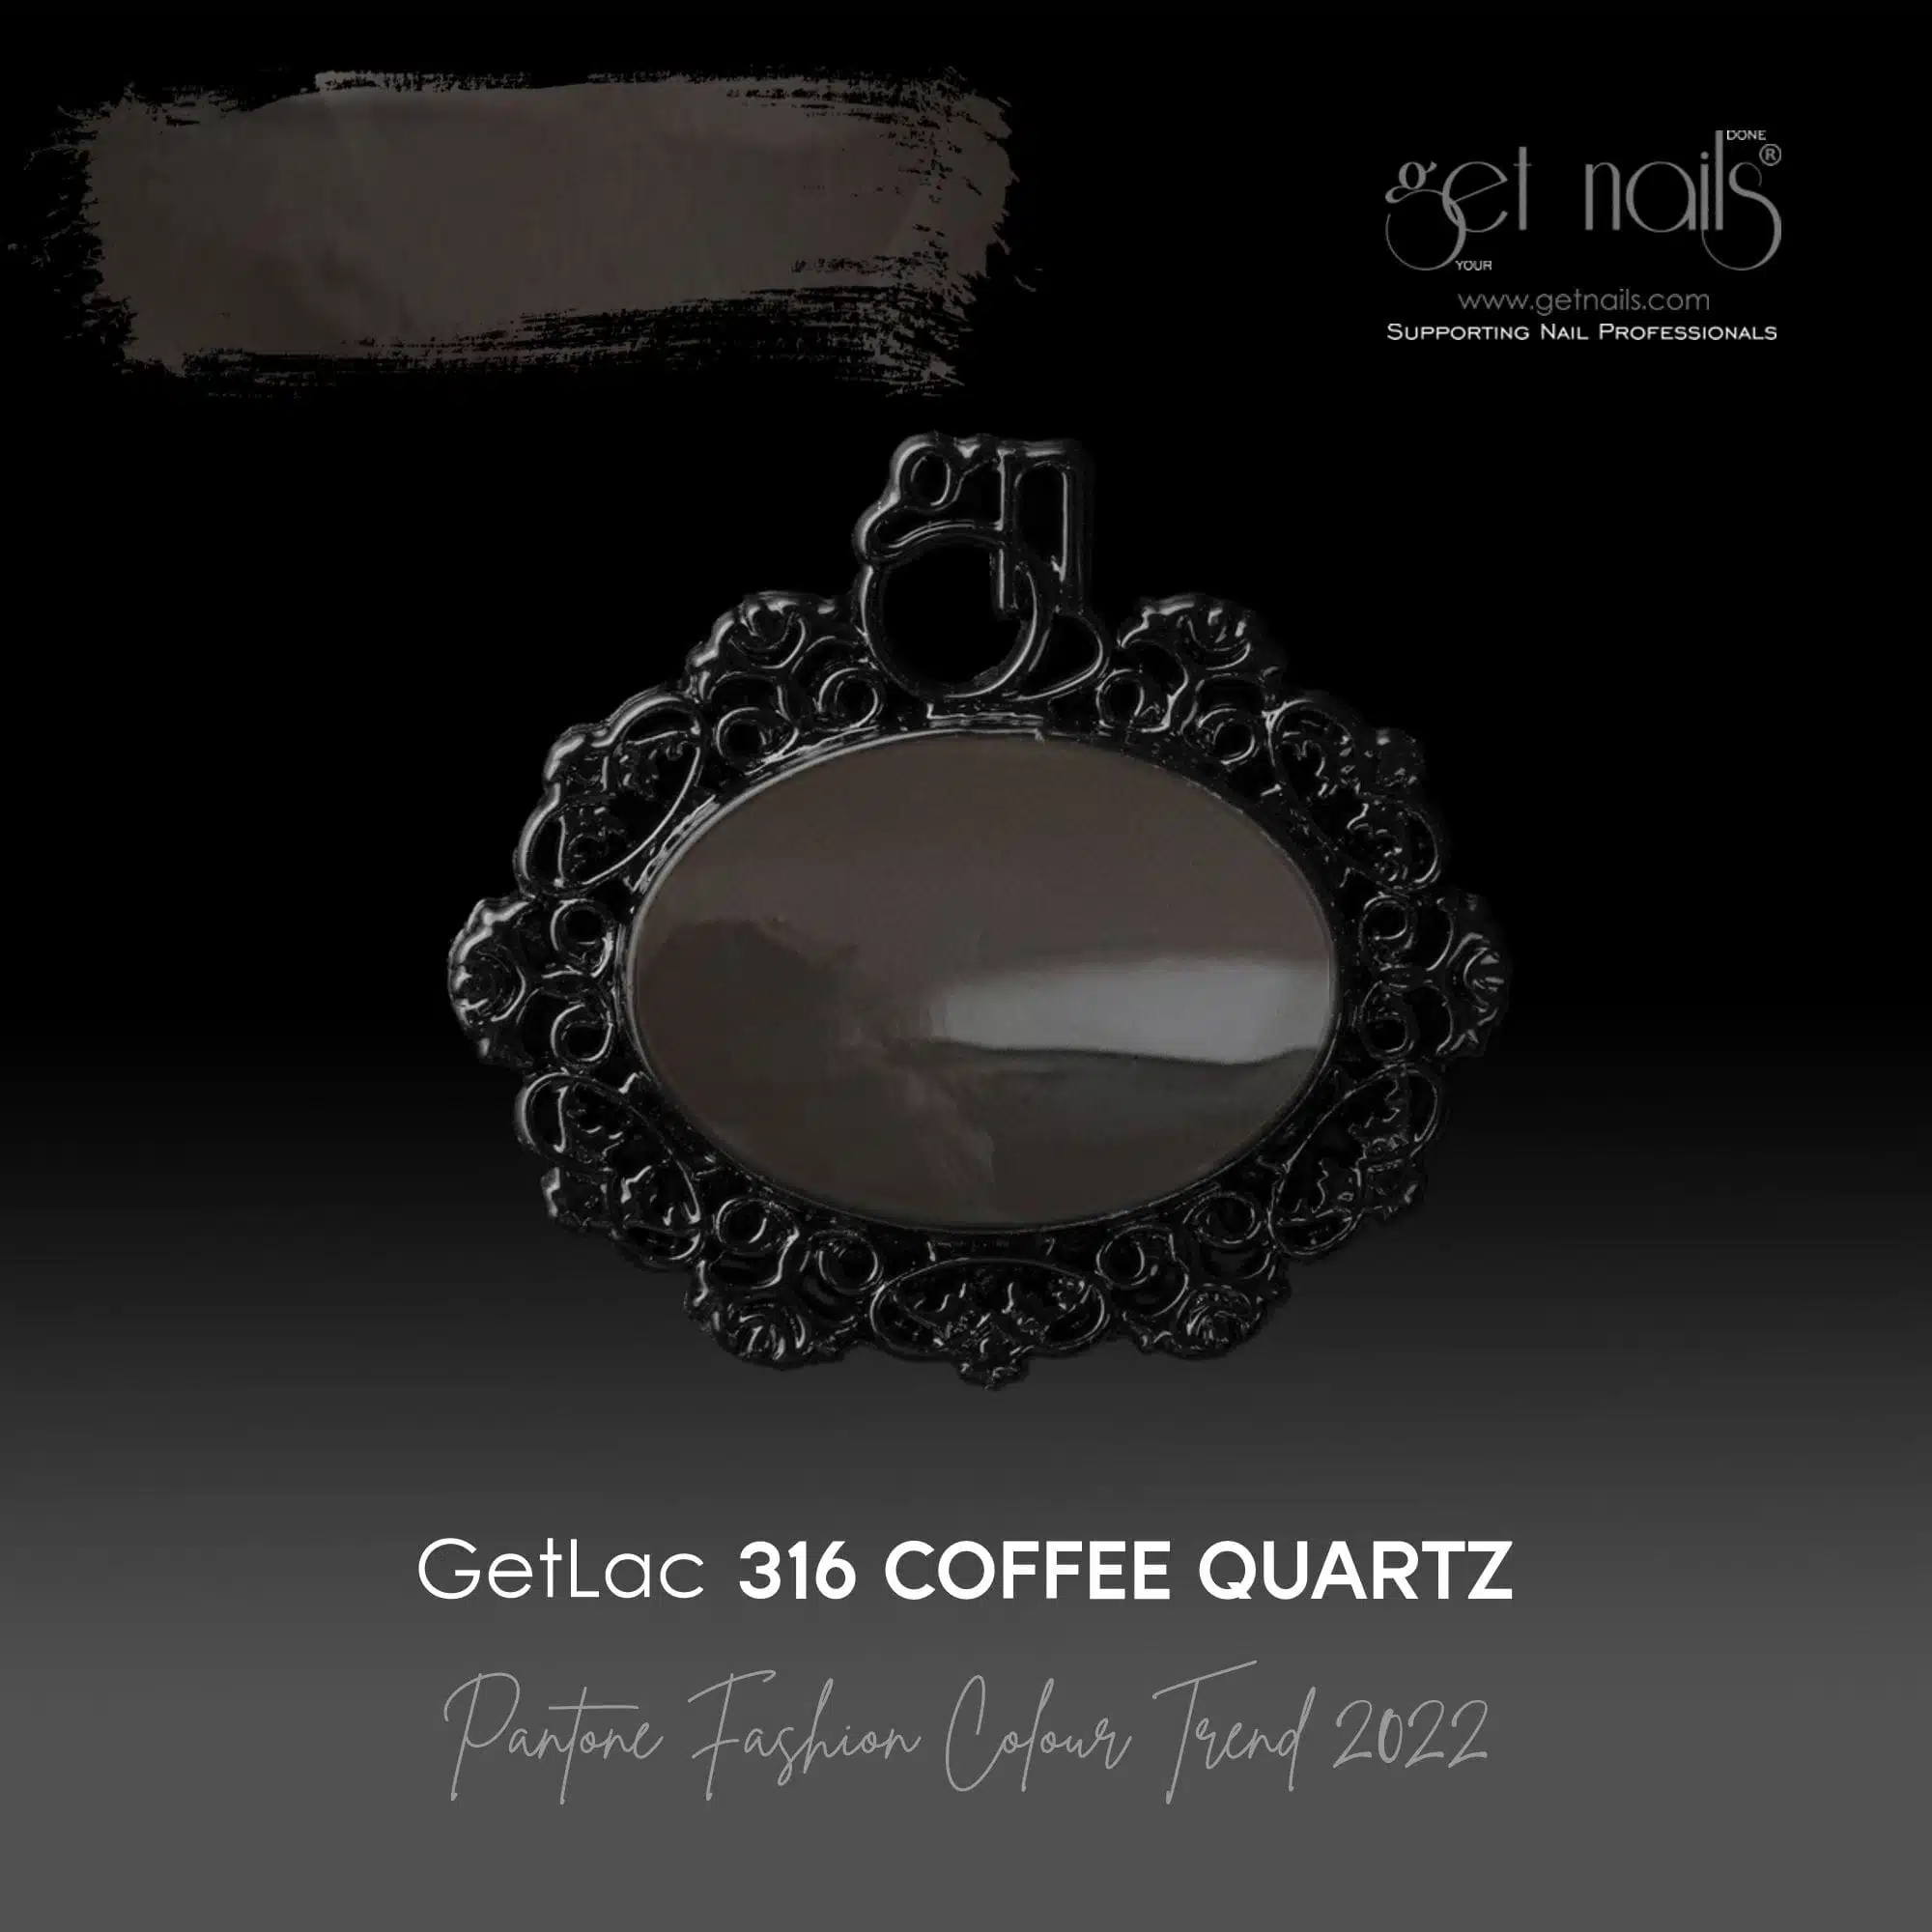 Get Nails Austria - GetLac 316 Coffee Quartz 15g